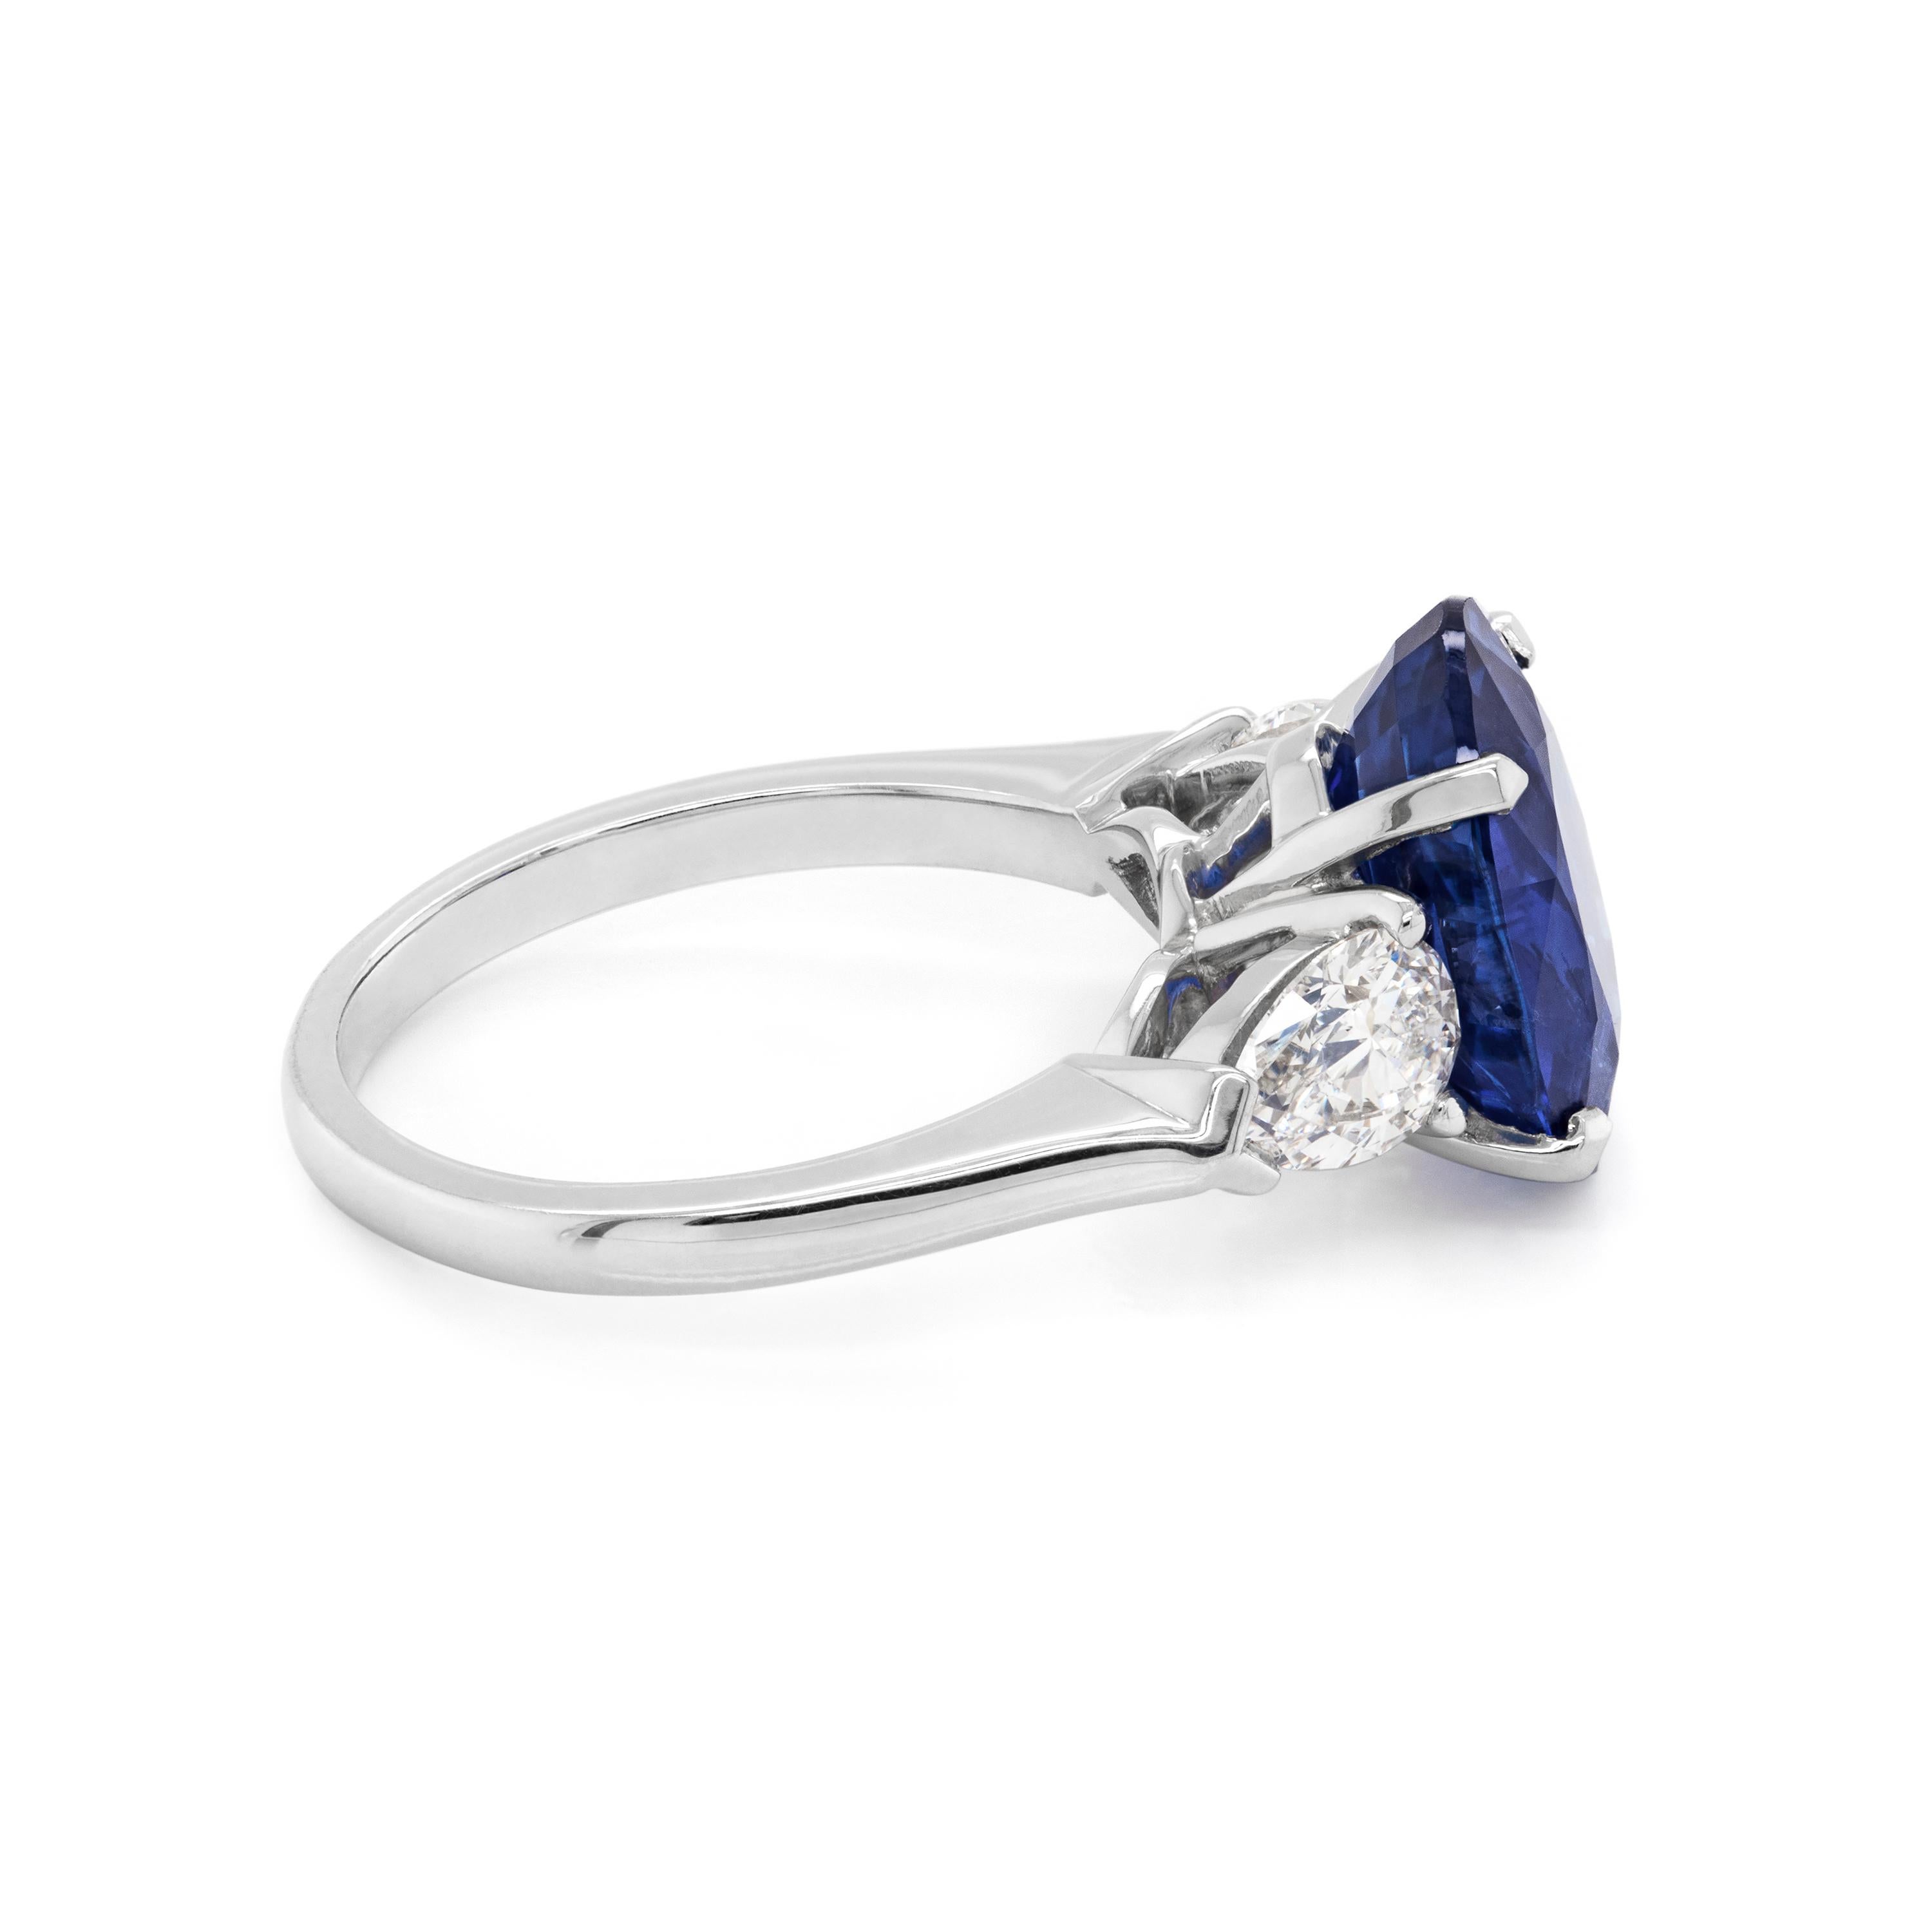 Une bague de fiançailles absolument exquise mettant en vedette un saphir ovale bleu royal pesant 5.70 carats serti dans une monture à quatre griffes, à dos ouvert. Cette pierre incroyable est accompagnée d'un diamant en forme de poire de chaque